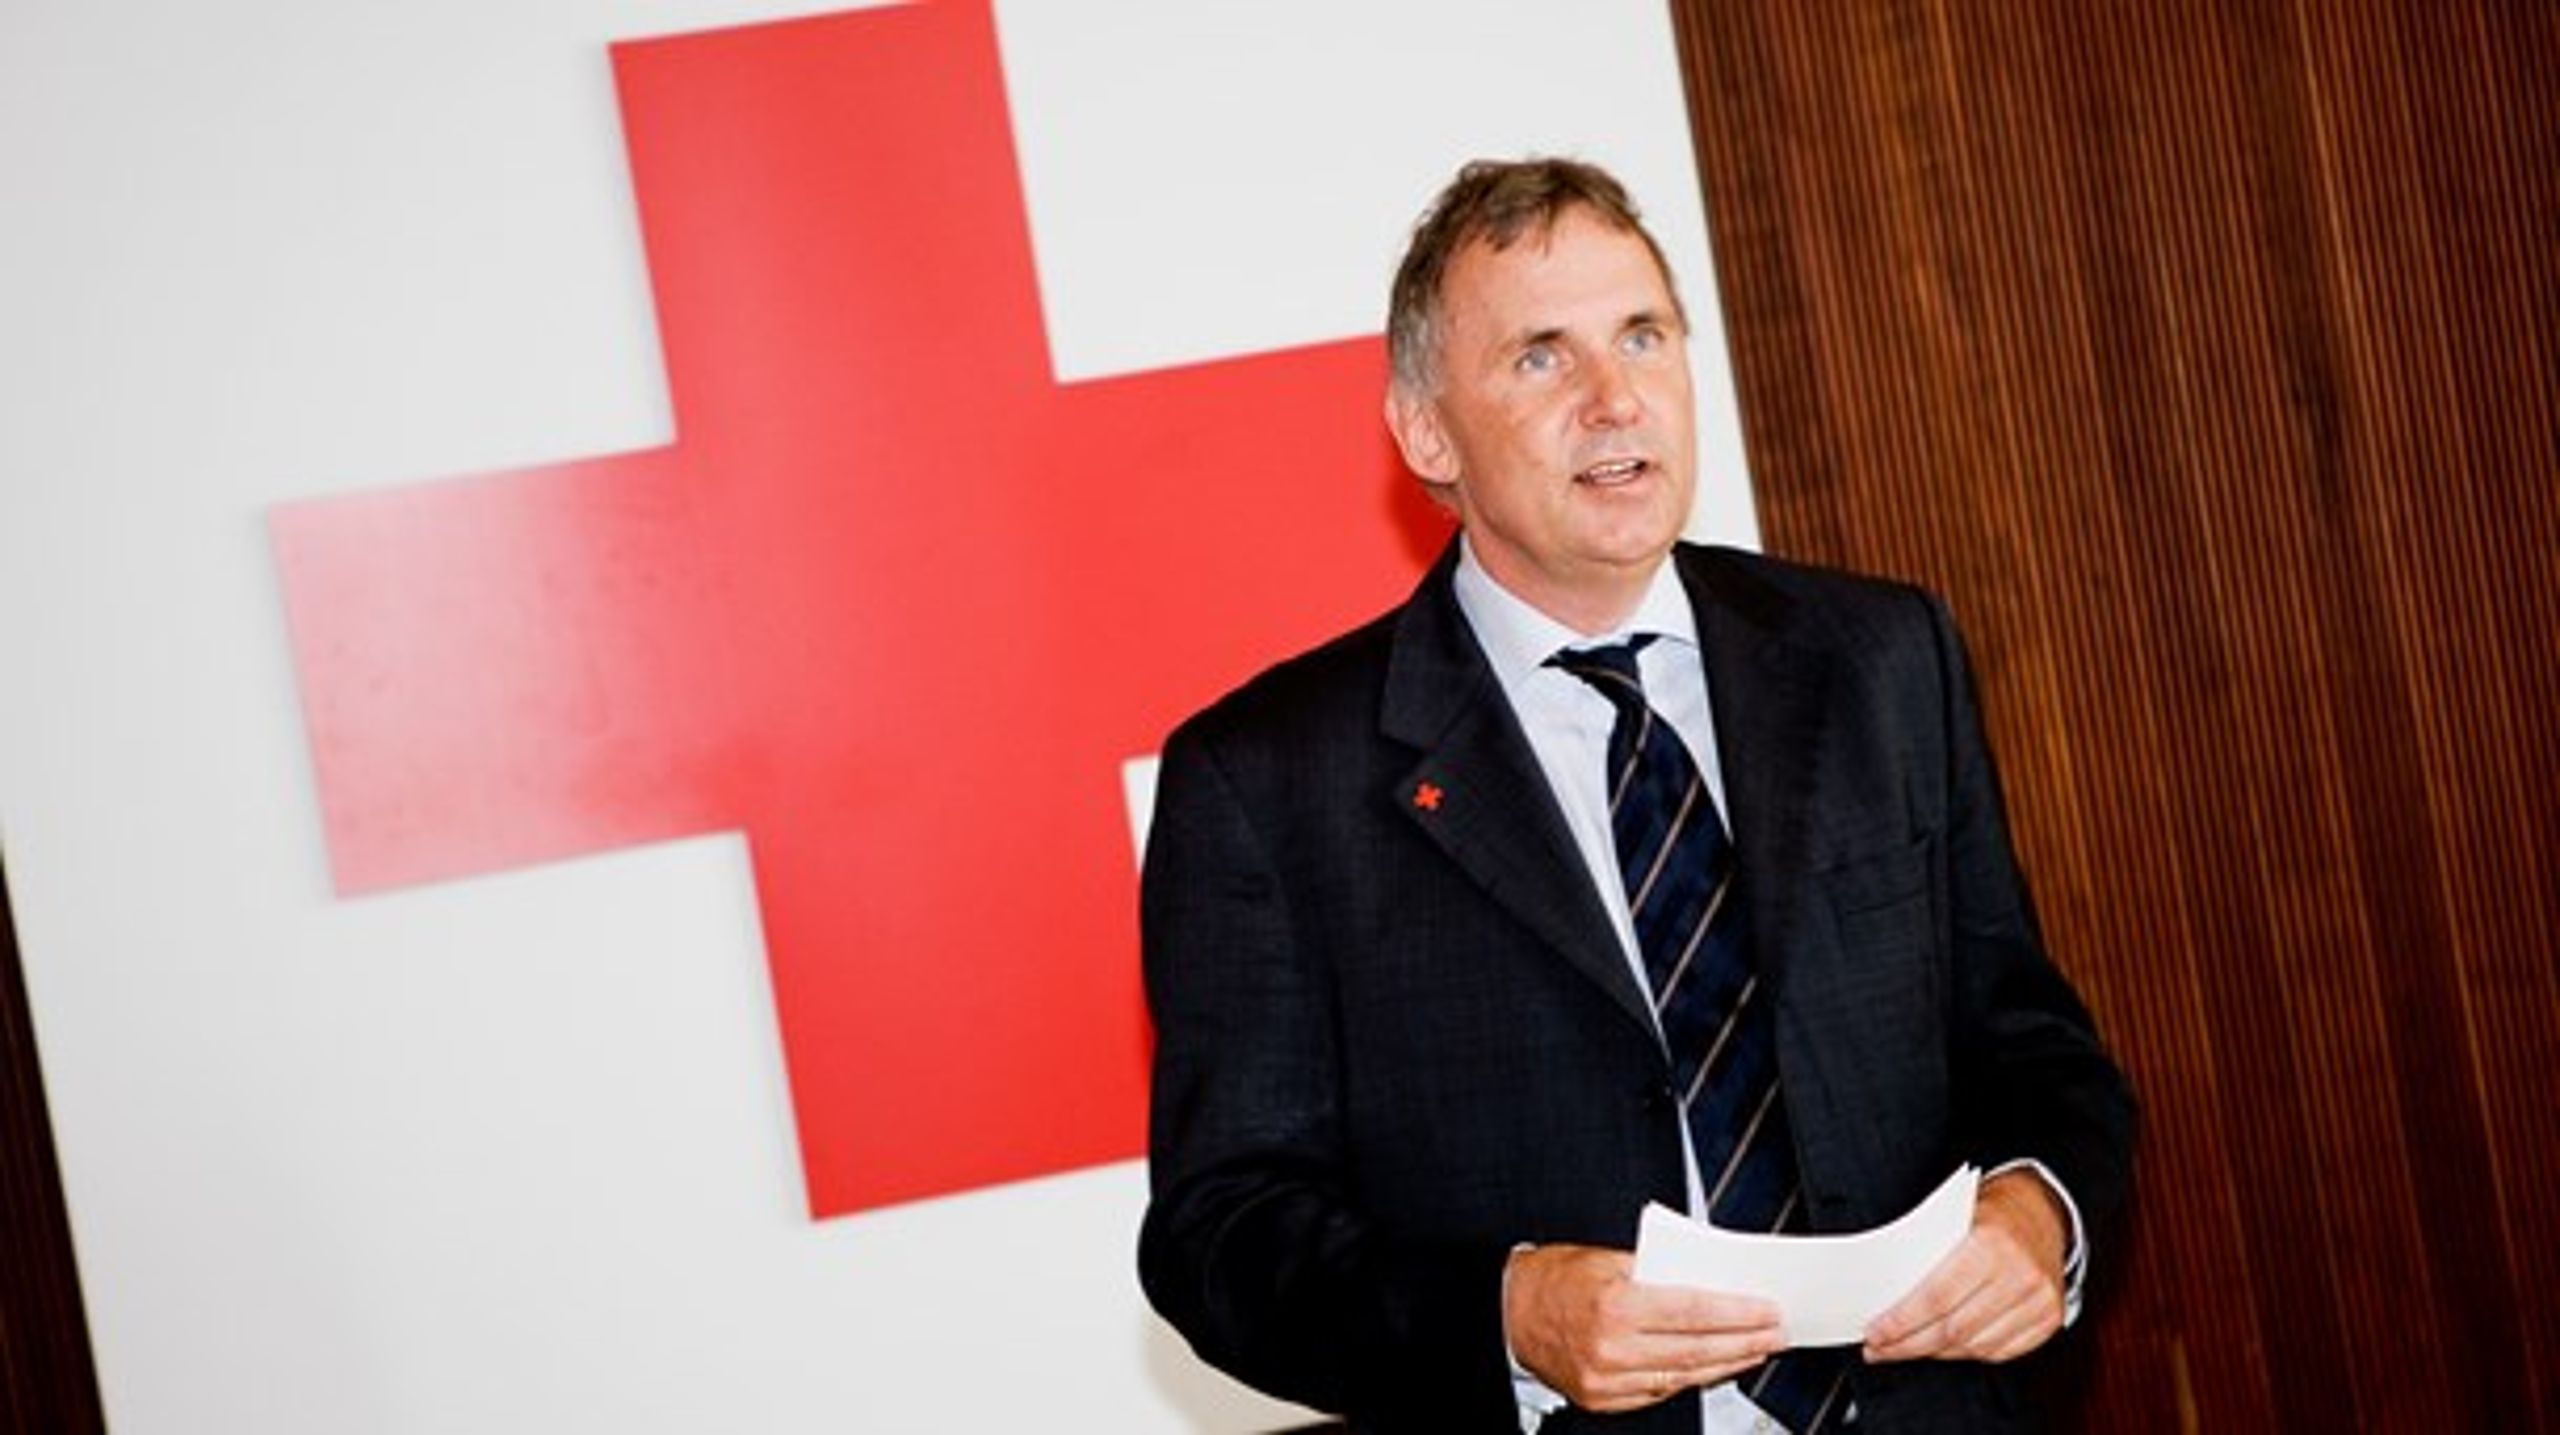 "Vi tror på det digitale som døråbner mellem mennesker," siger Anders Ladekarl, generalsekretær i Dansk Røde Kors, som mandag lancerer et nyt partnerskab med Boblberg.&nbsp;